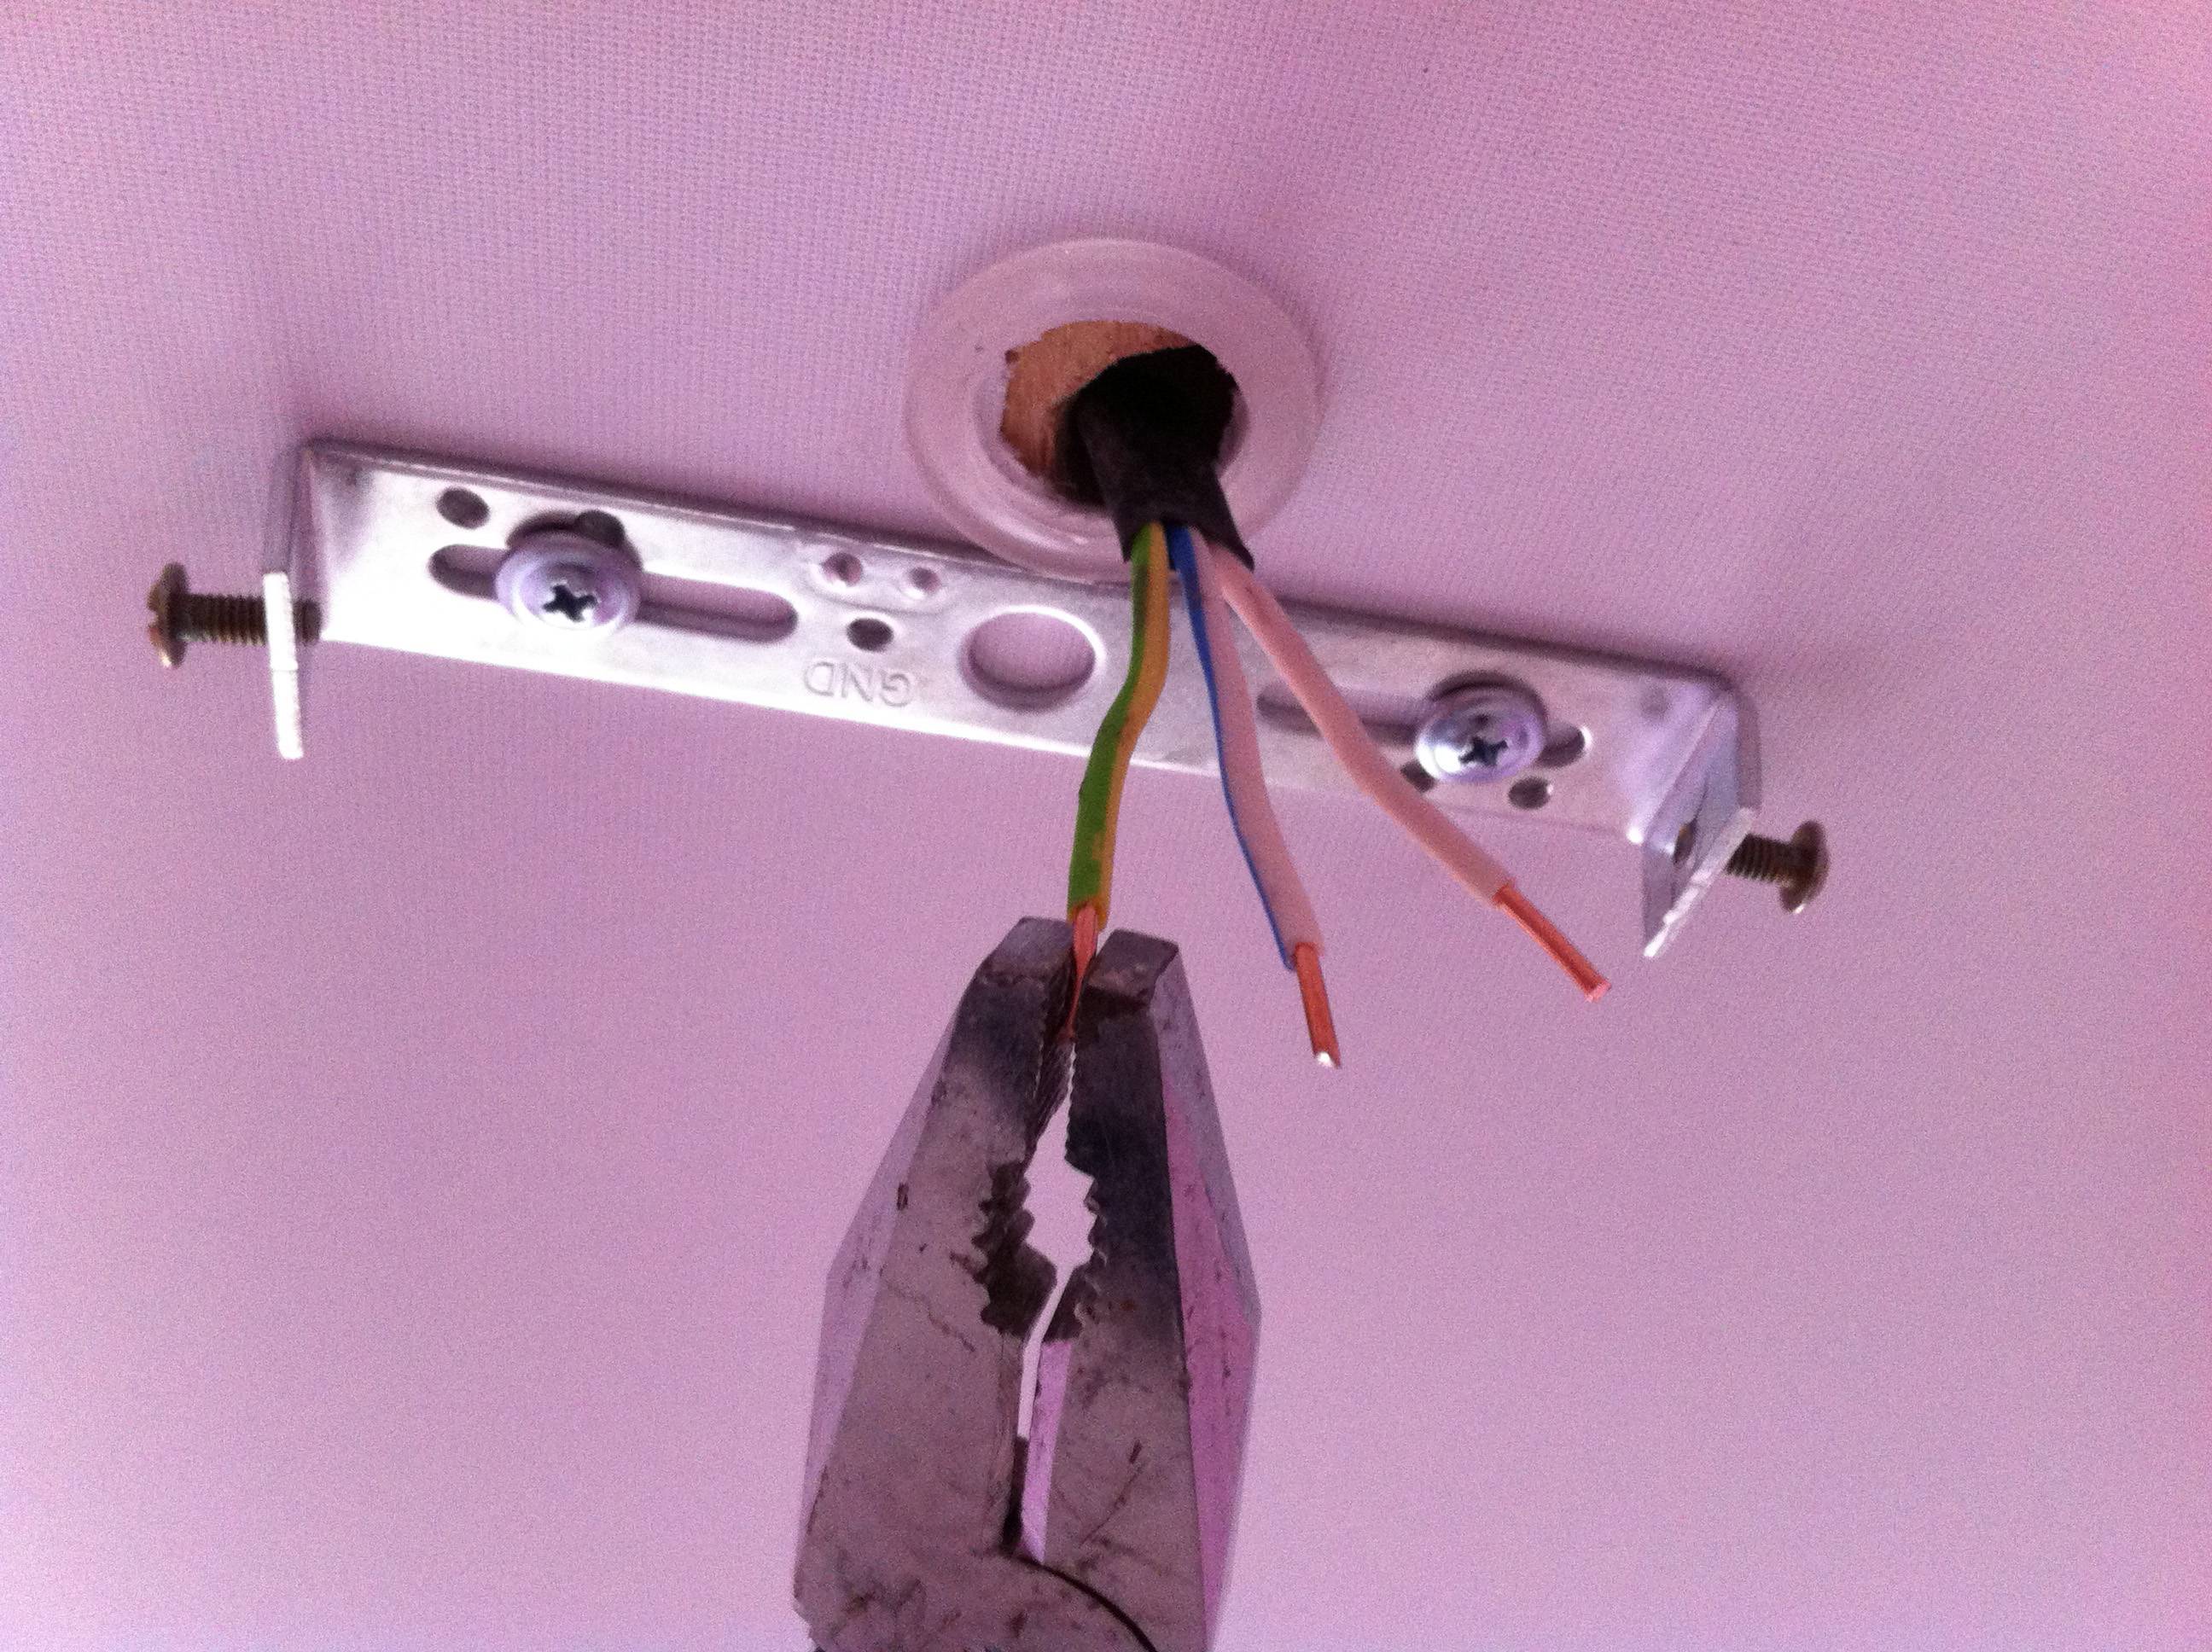 Крепление люстры к натяжному потолку, как крепить осветительные приборы своими руками: инструкция, фото и видео